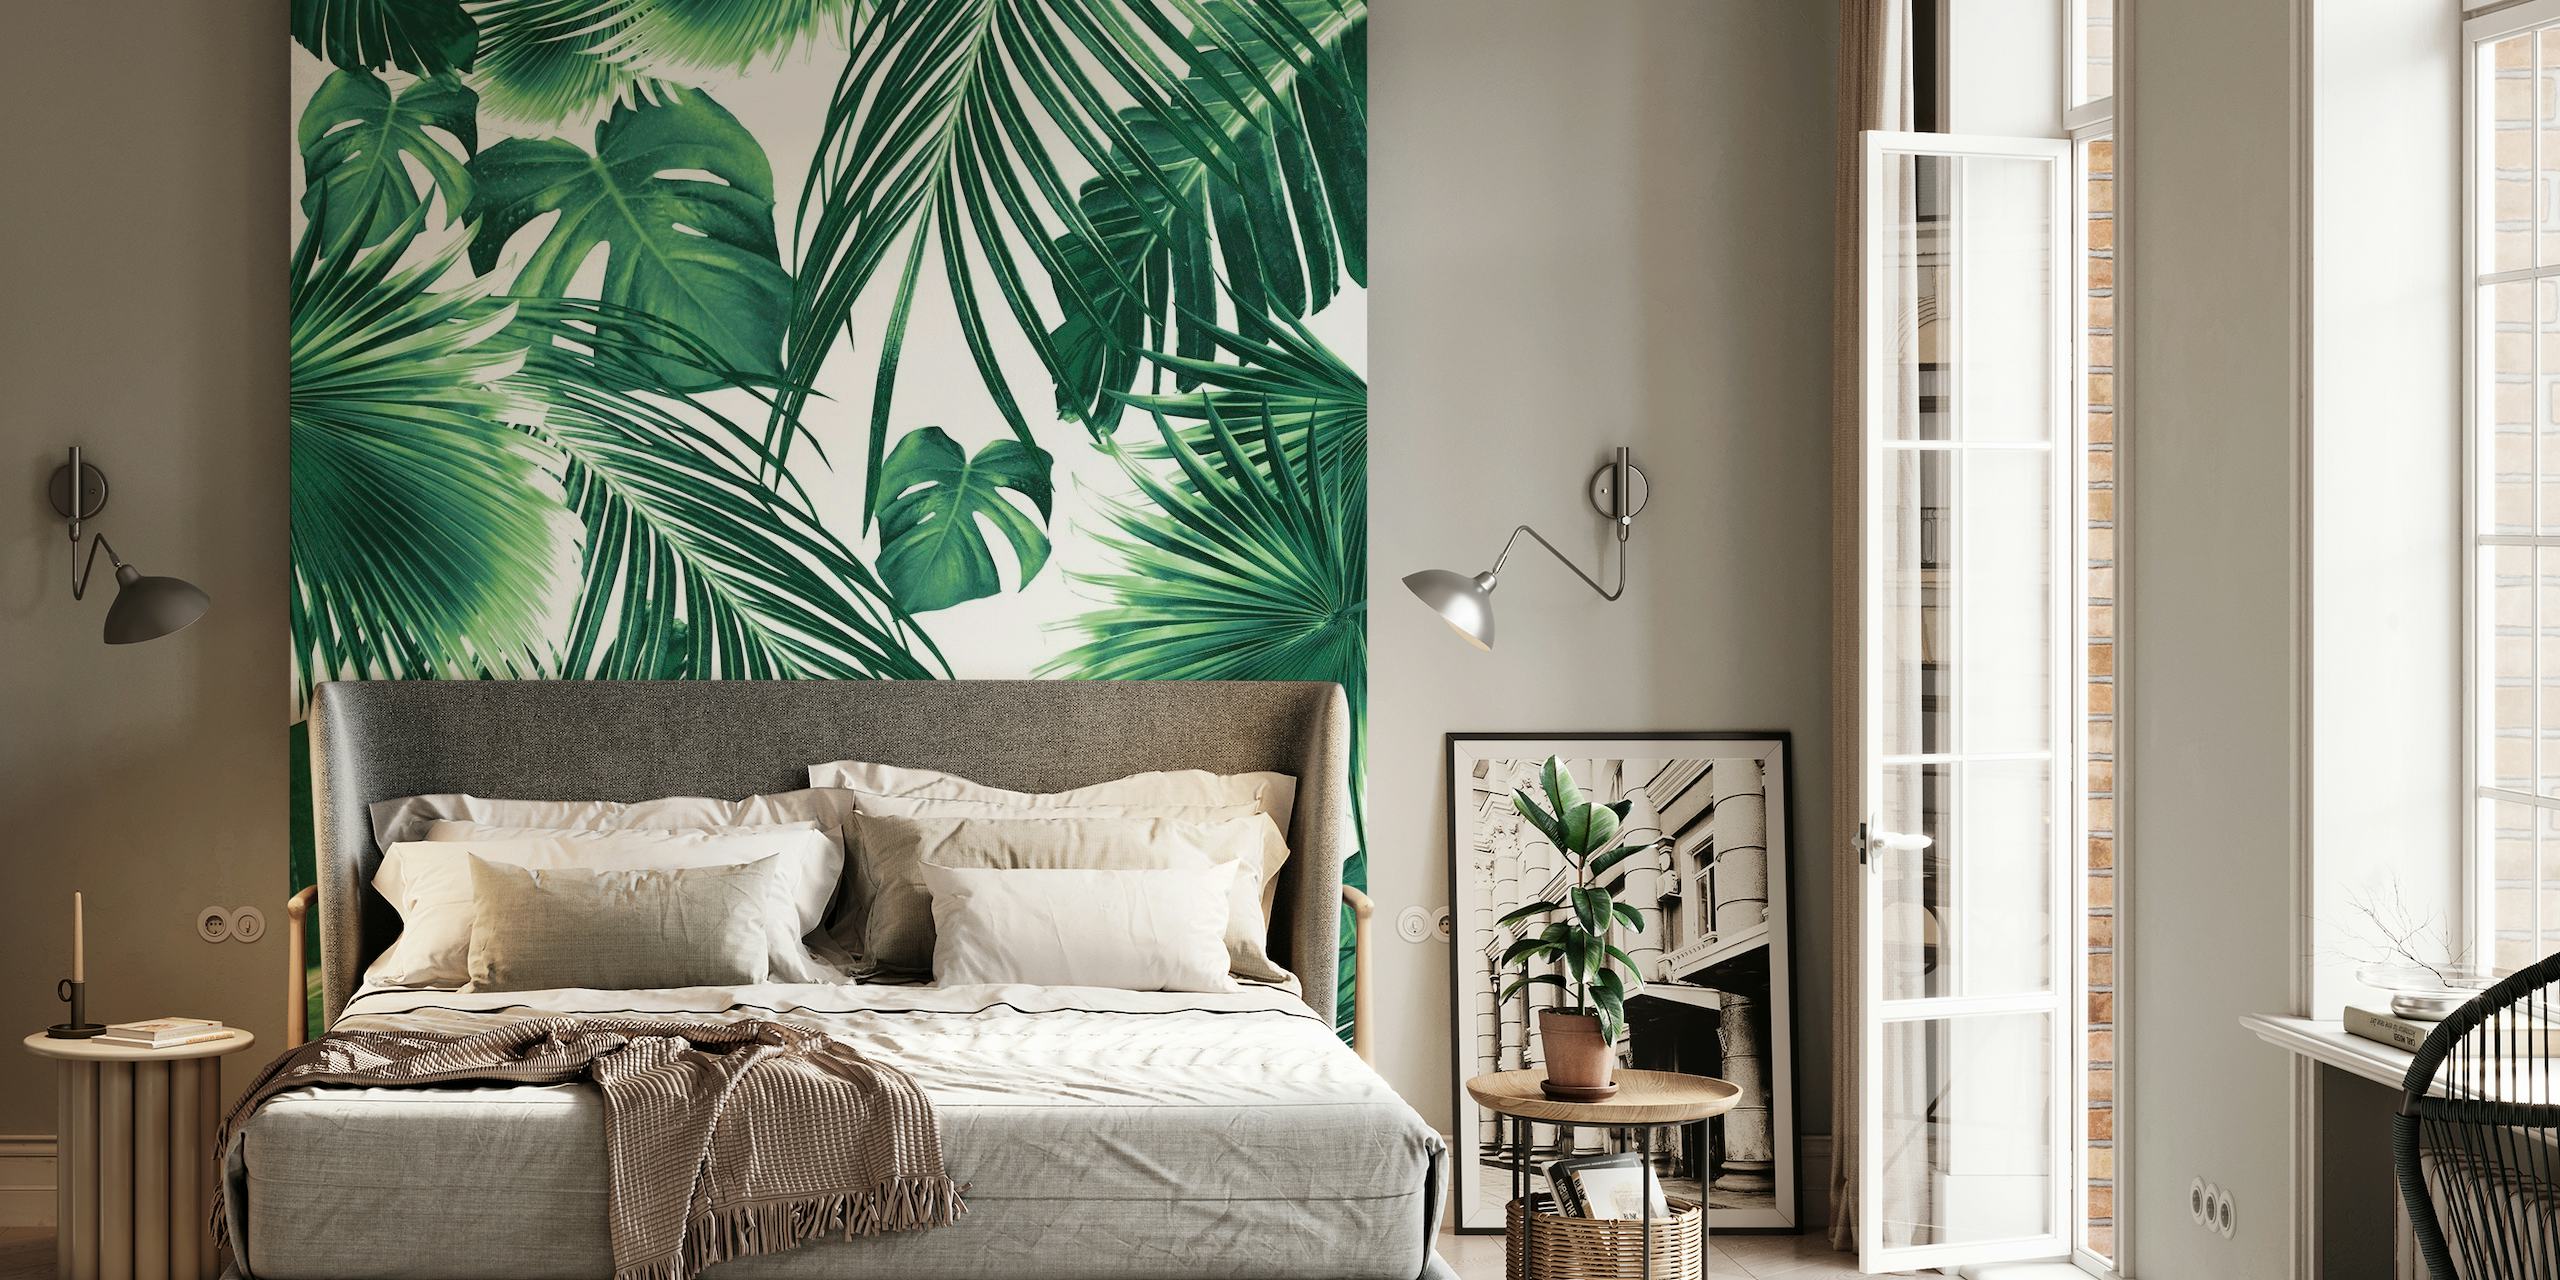 Rehevä seinämaalaus, jossa on tiheä kuviointi trooppisia viidakon lehtiä vihreän sävyissä